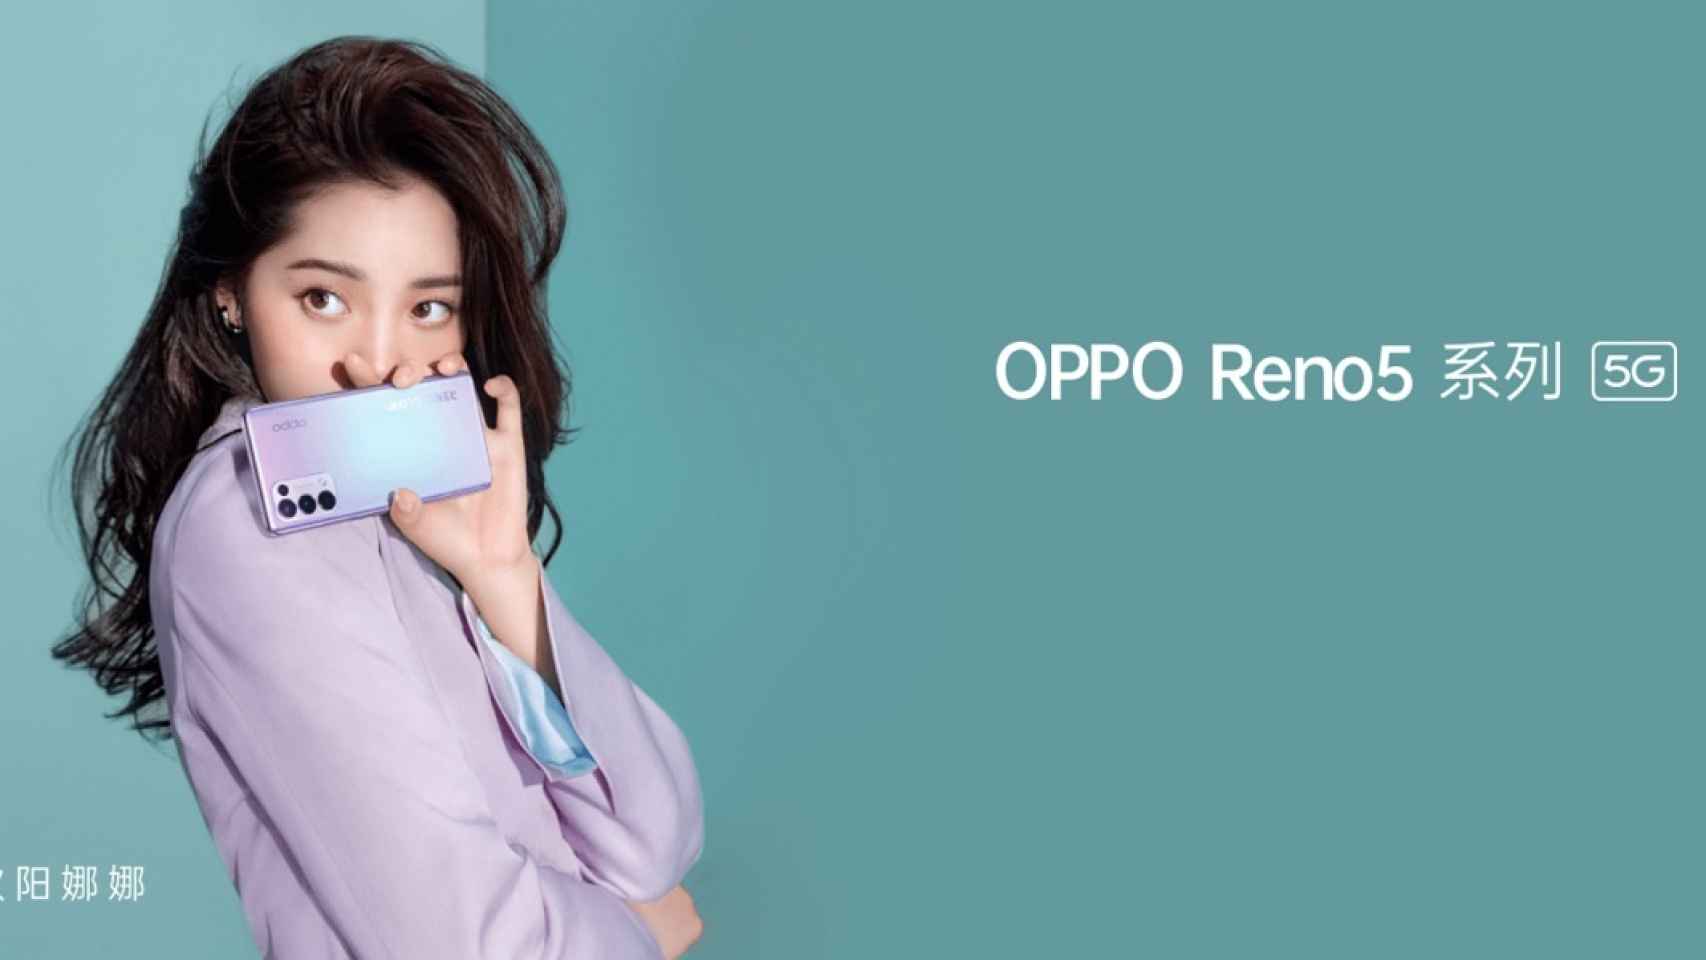 Nuevos OPPO Reno 5 y Reno 5 Pro: especificaciones, precio y lanzamiento